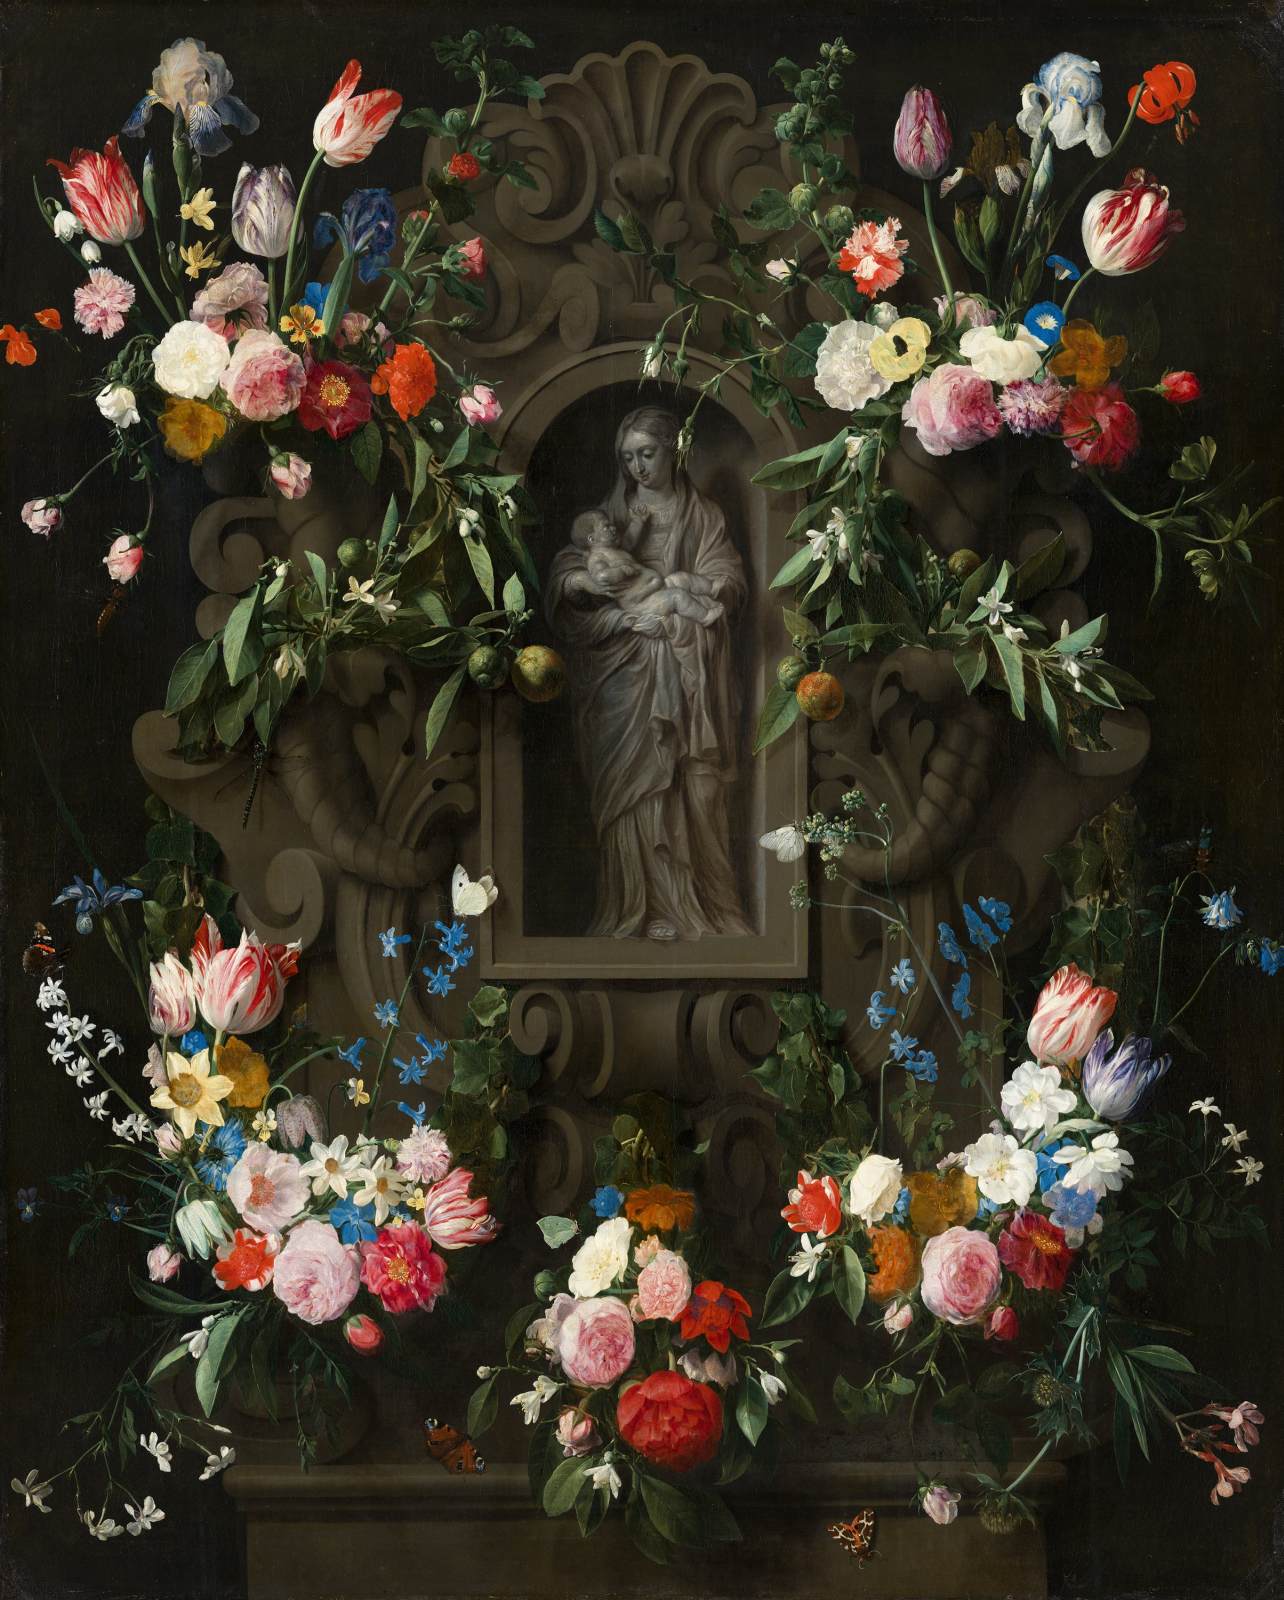 Guirnalda de Flores, które otaczają rzeźbę Dziewicy Maryi